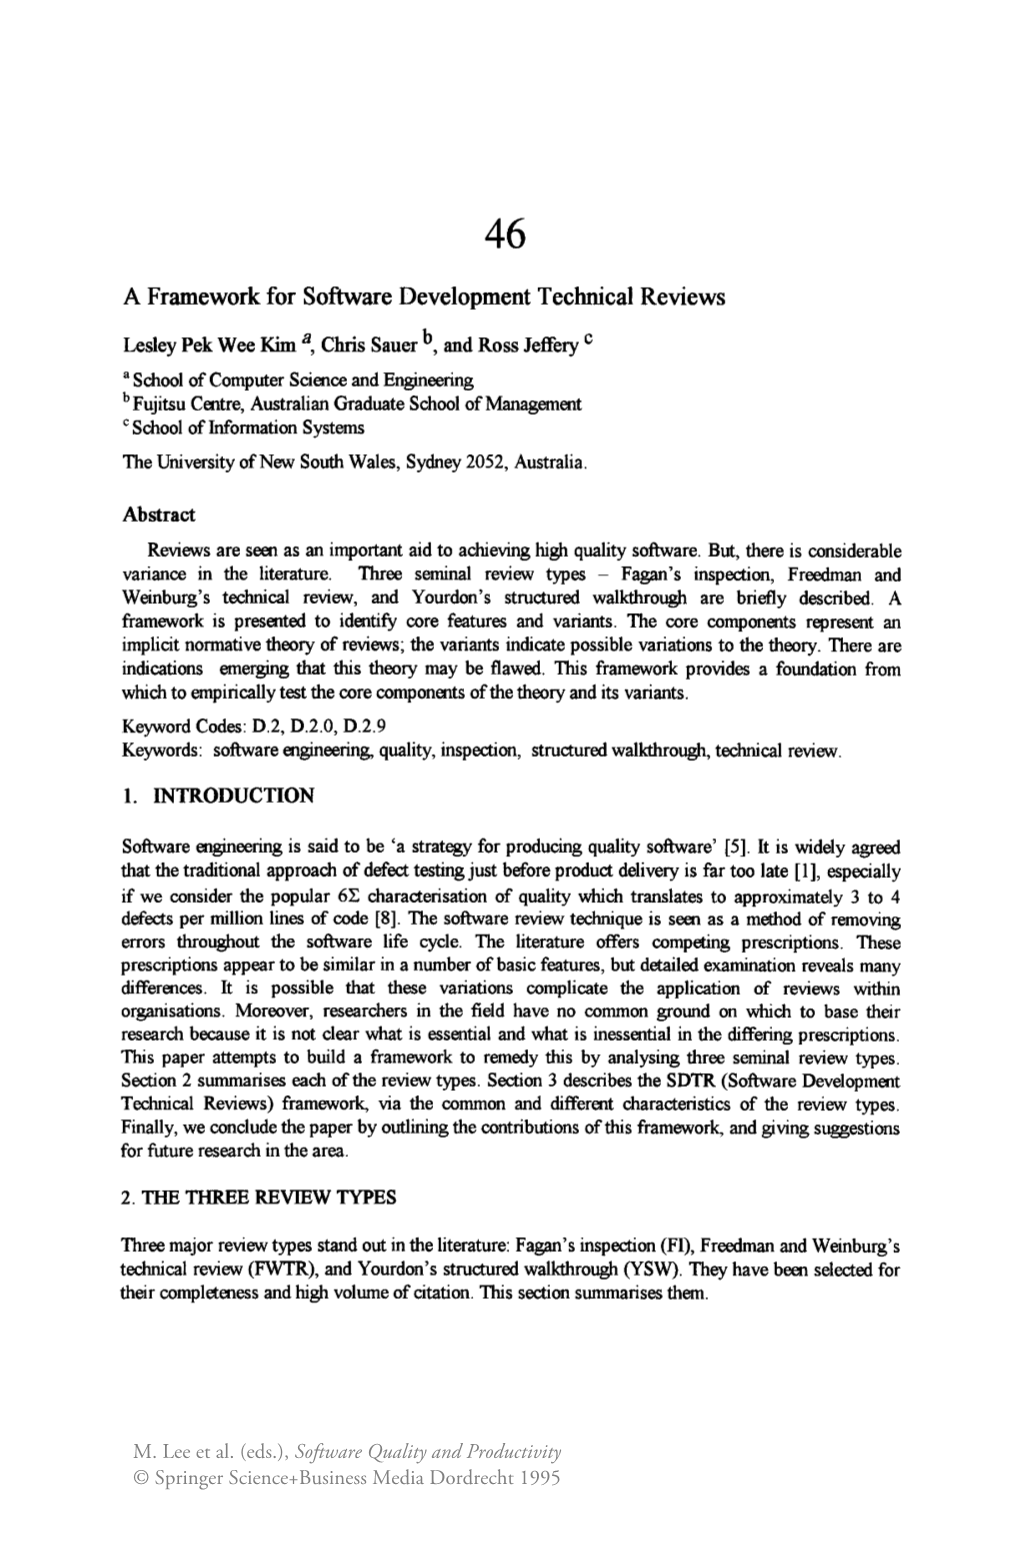 A Framework for Software Development Technical Reviews